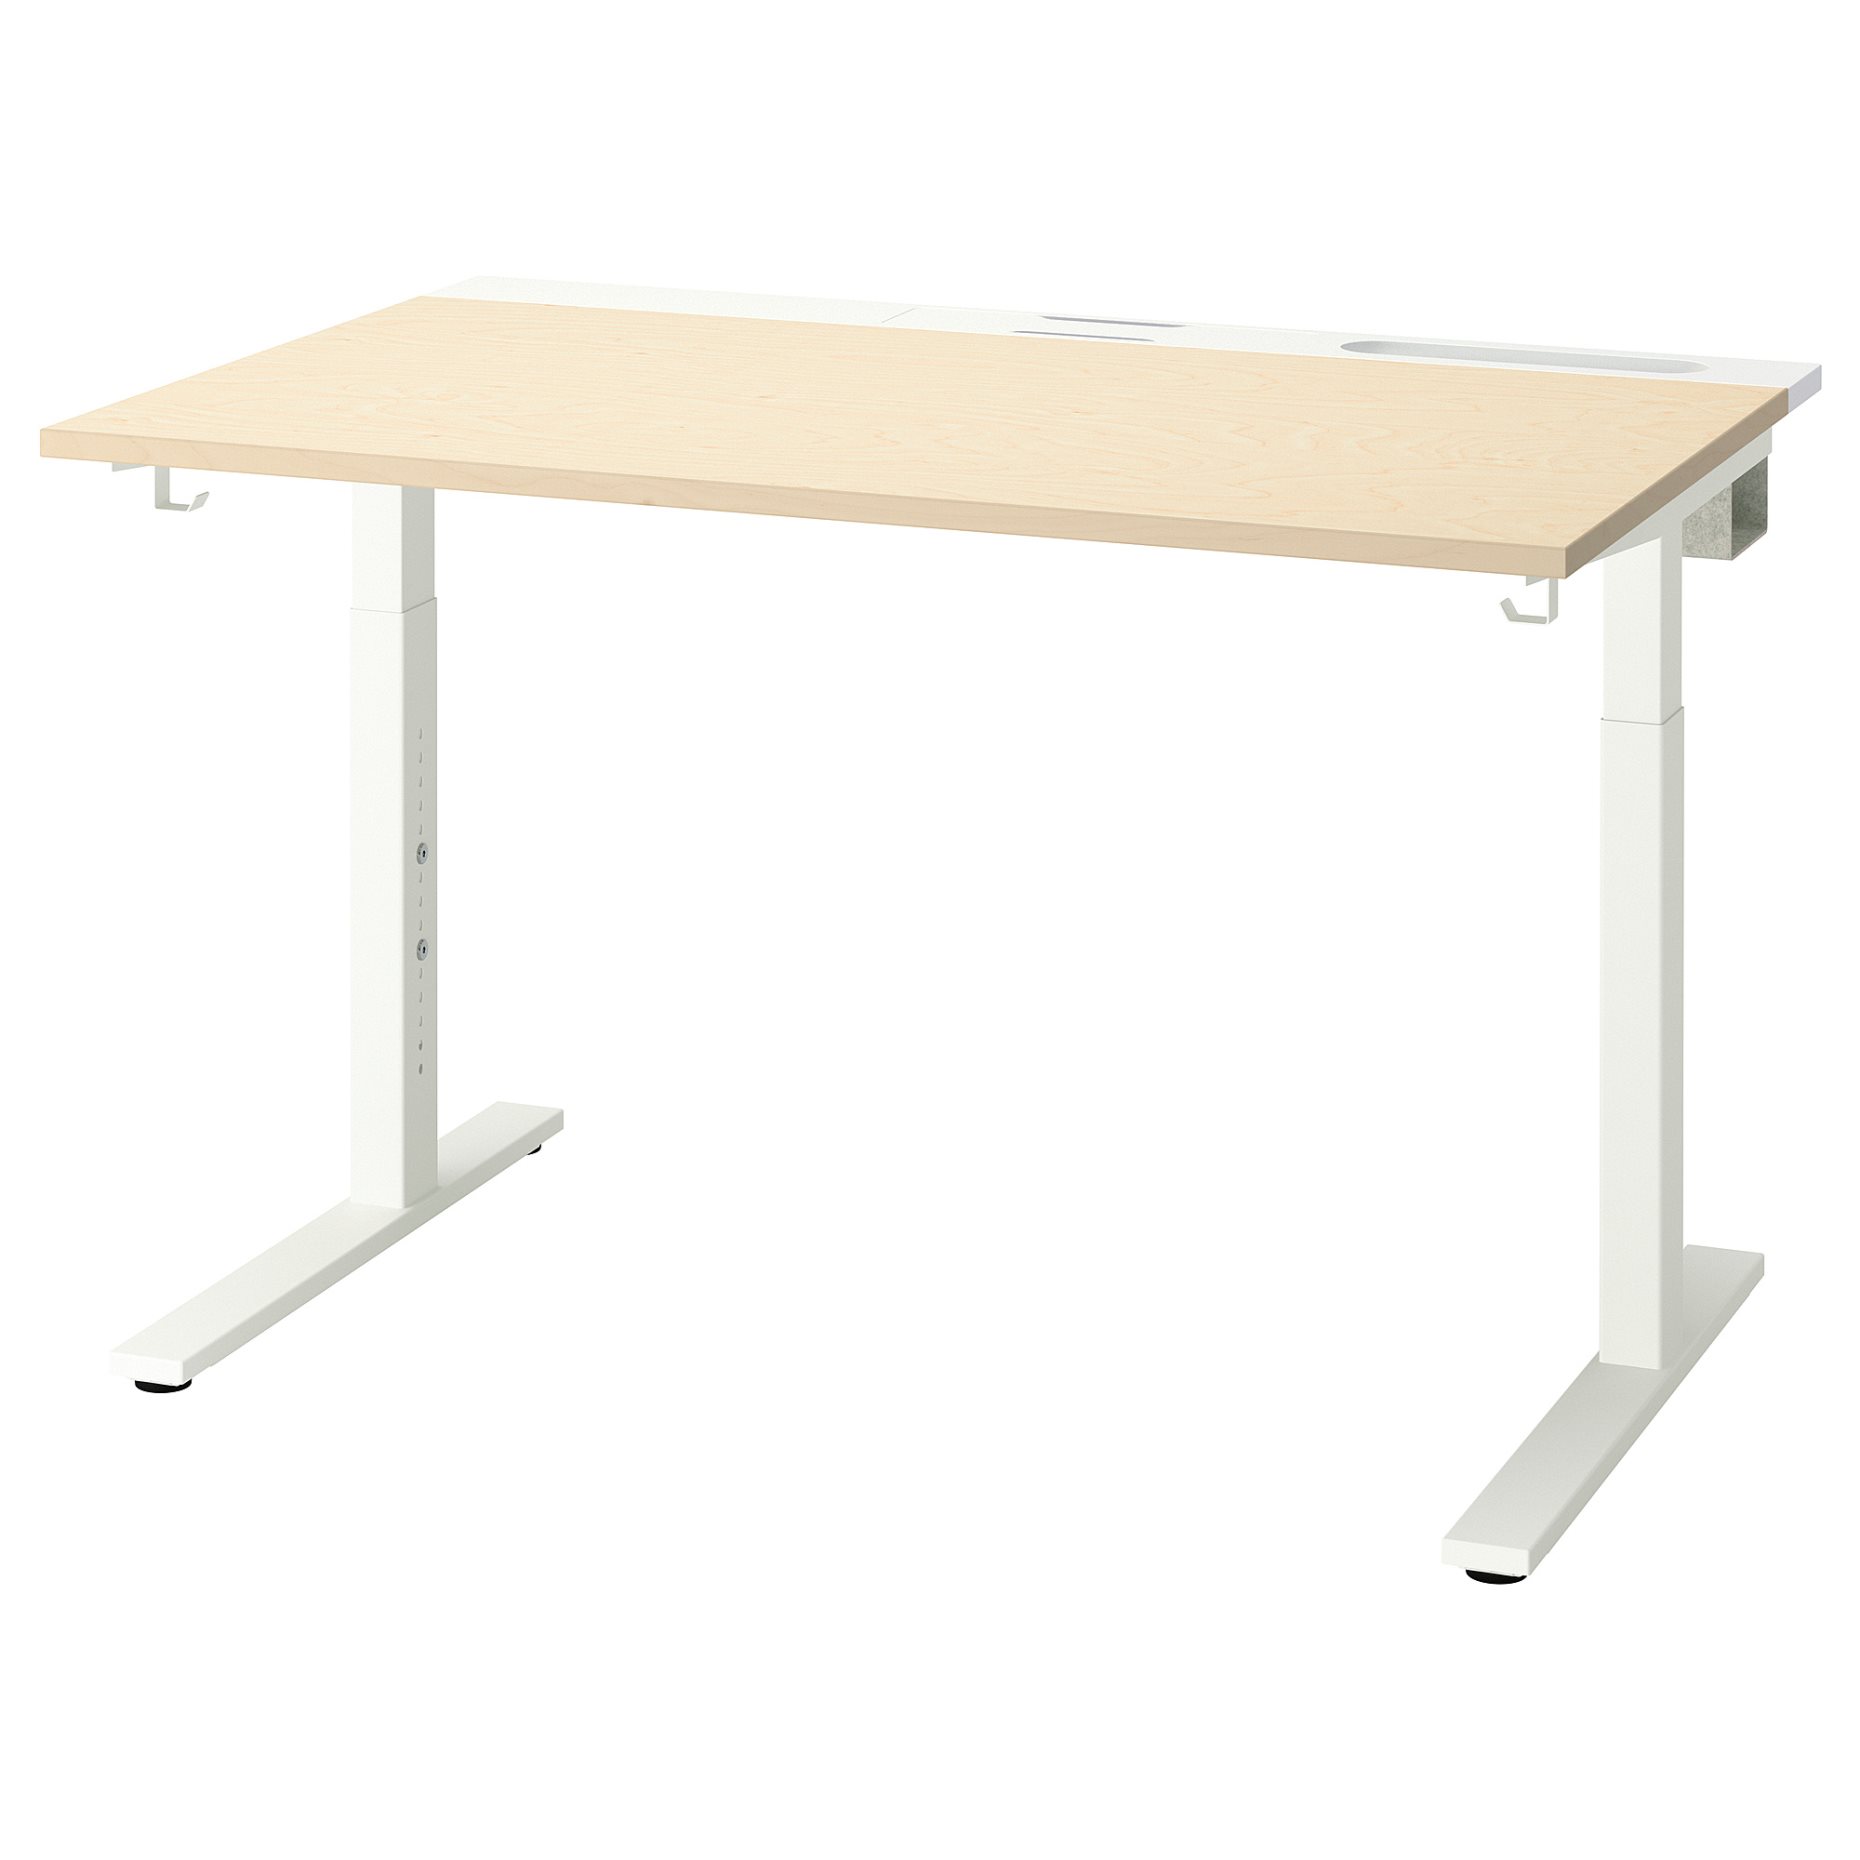 MITTZON, table top, 120x68 cm, 305.155.83